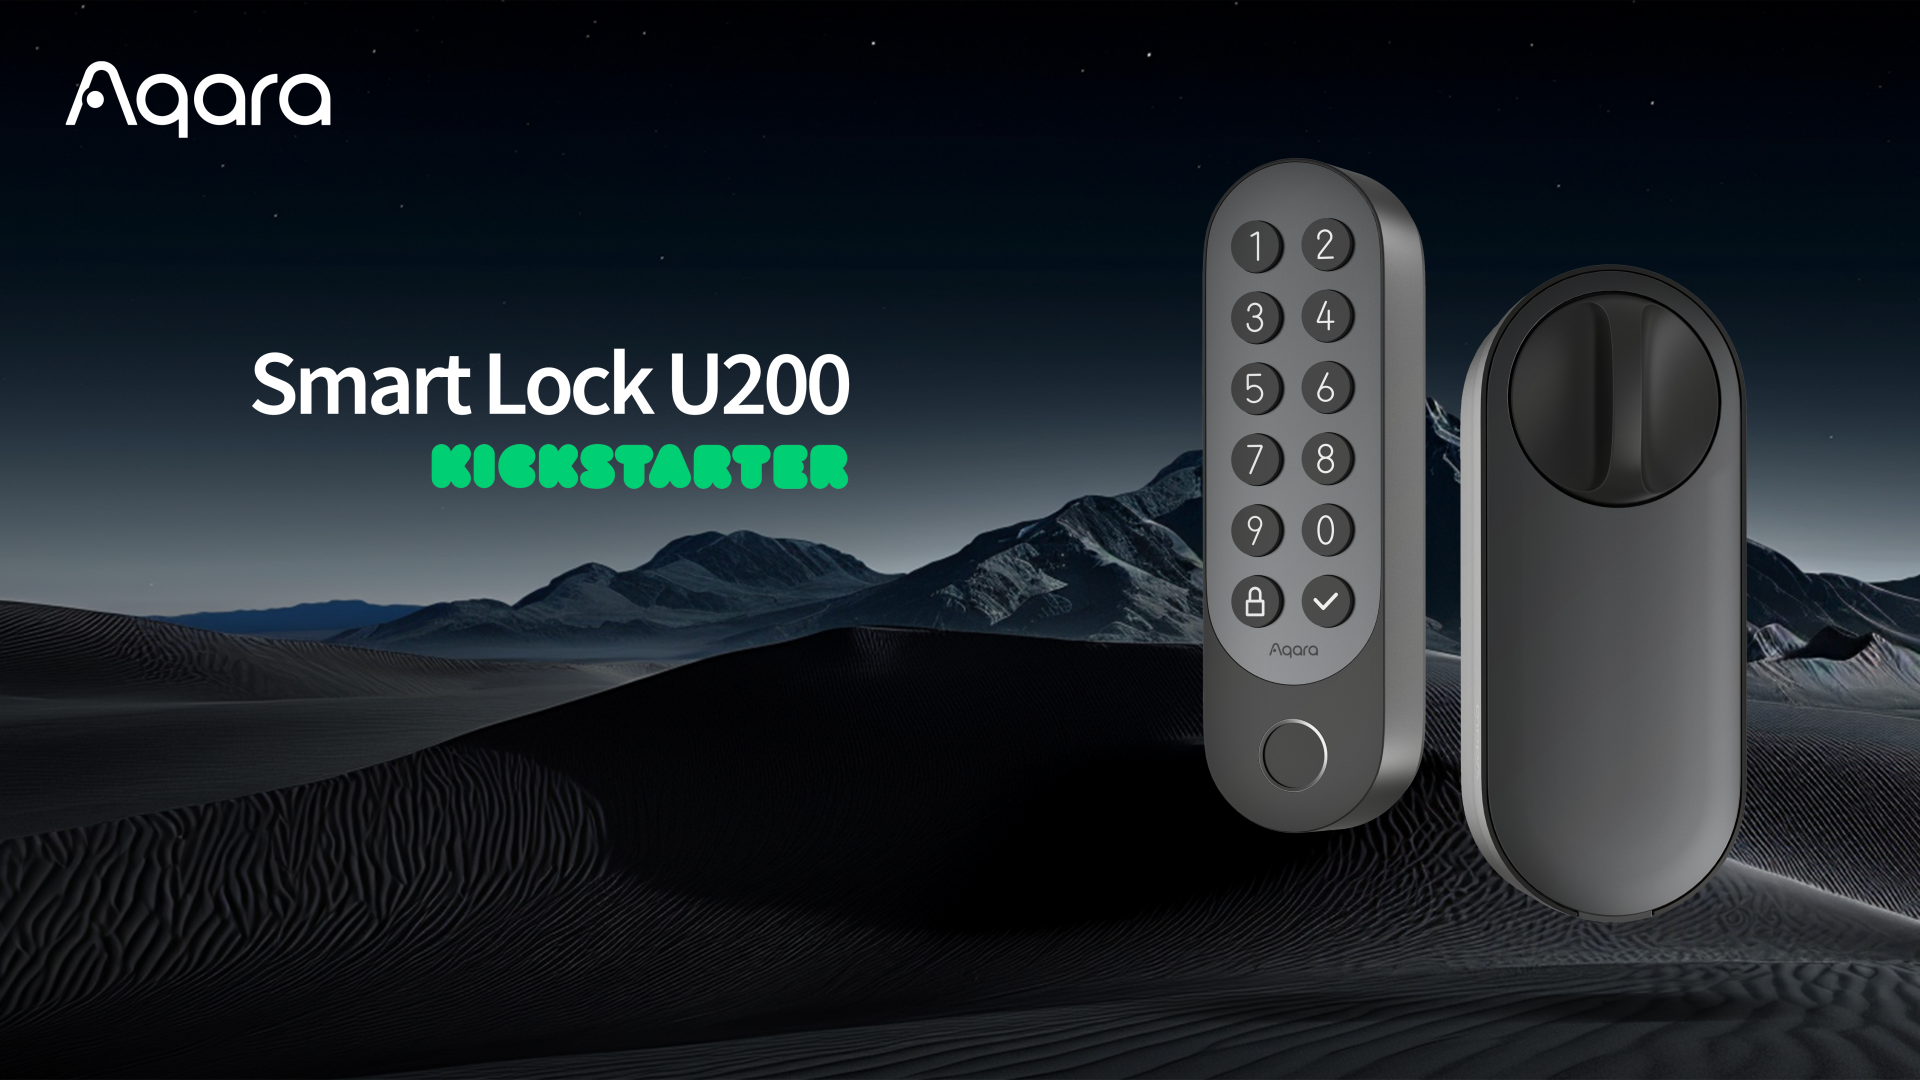 Aqara Smart Lock U200